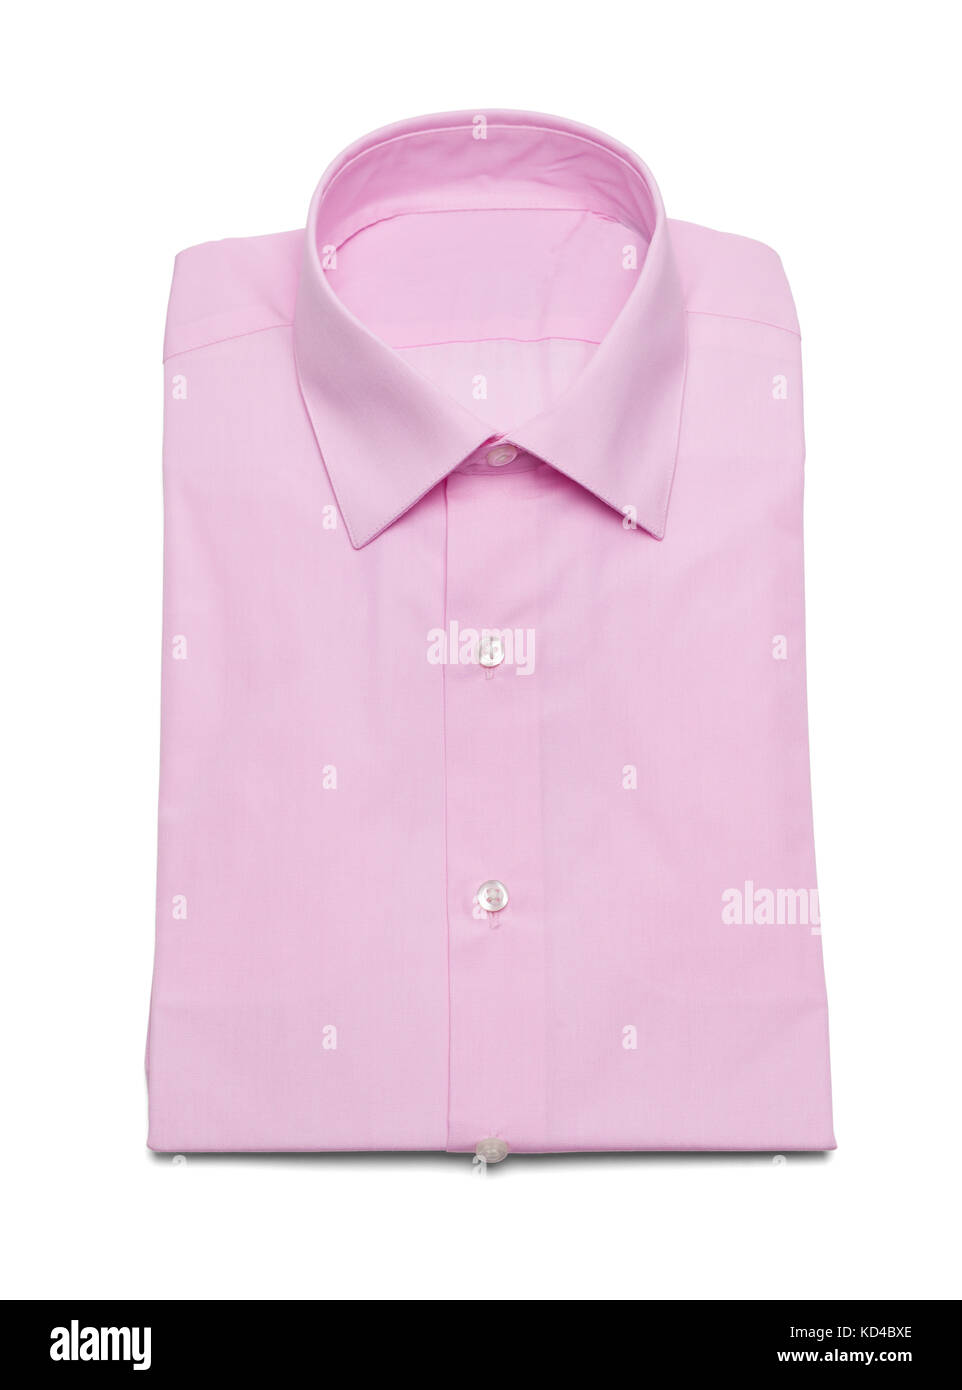 Rosa kragen Button Up Dress Shirt auf einem weißen Hintergrund. Stockfoto